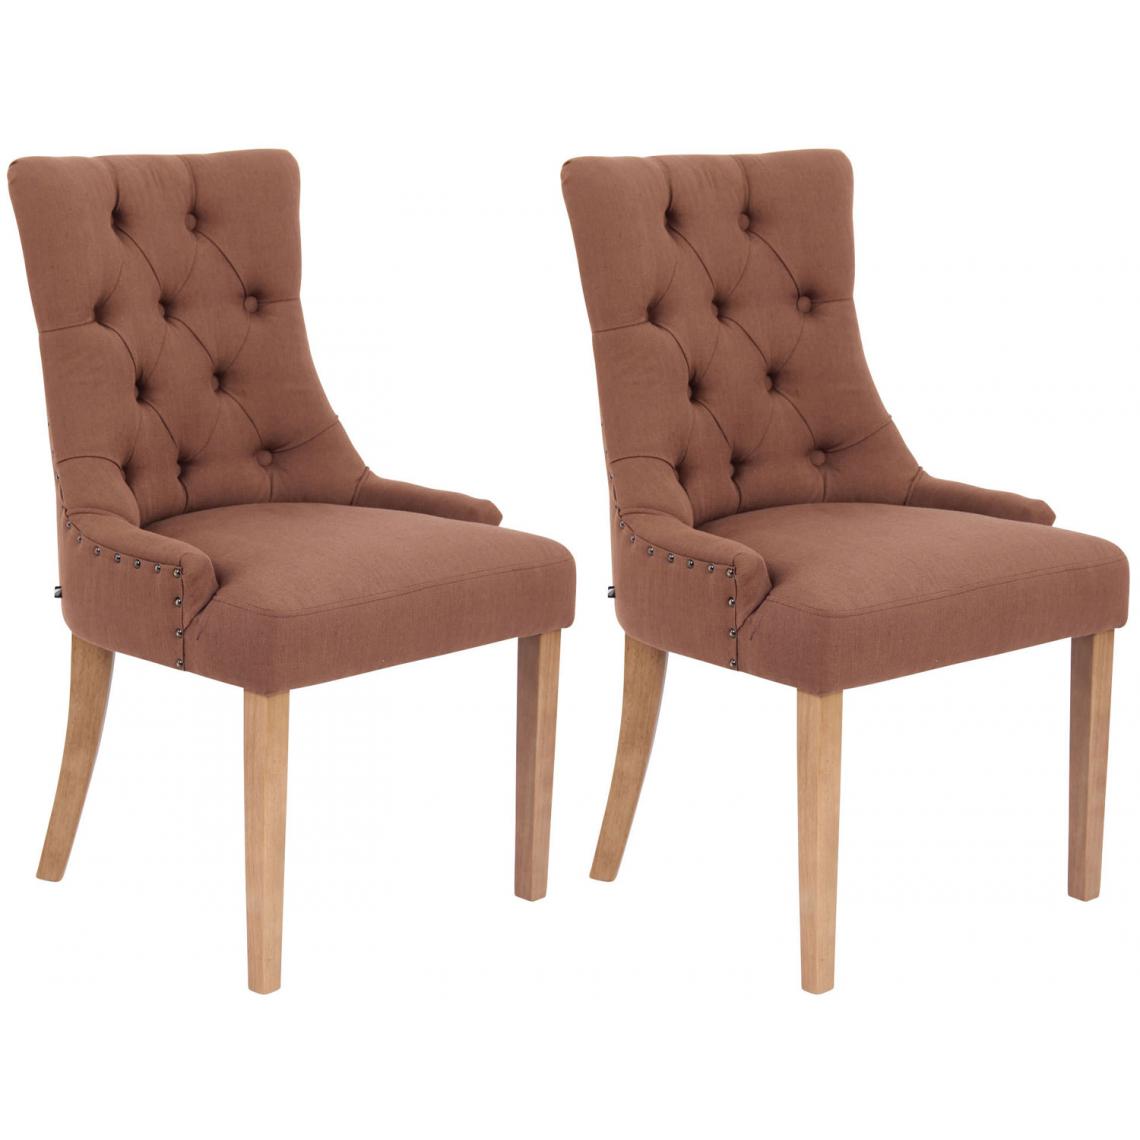 Icaverne - Splendide Lot de 2 chaises de salle à manger tissu categorie Athènes antique-clair couleur marron - Chaises